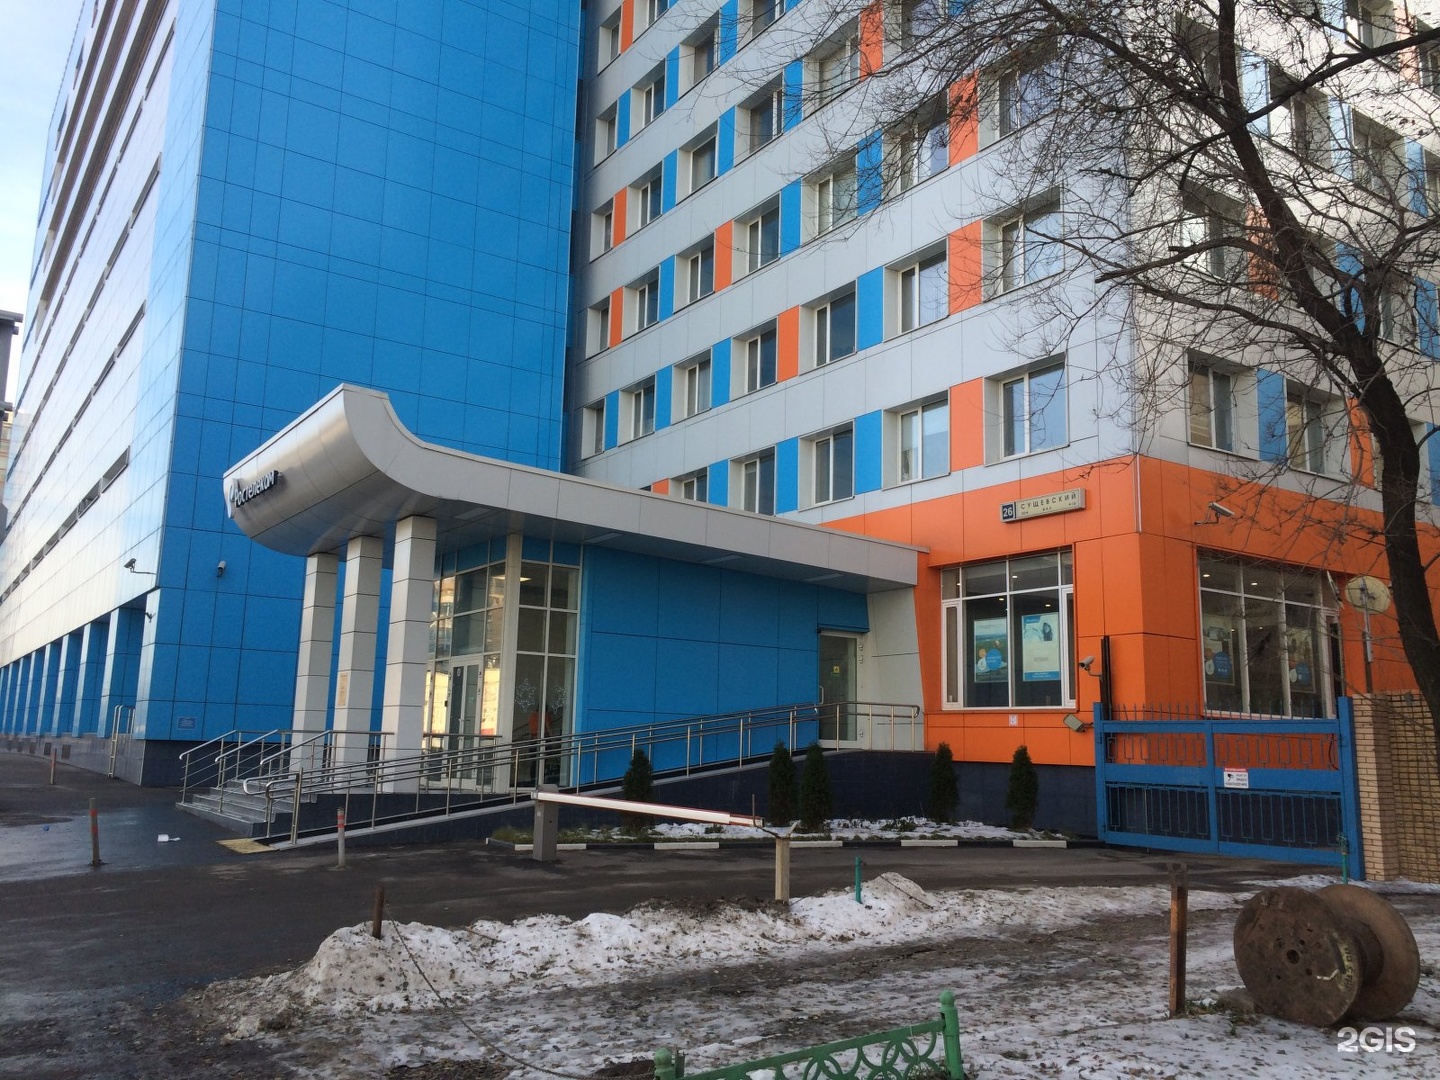 здание ростелекома в москве